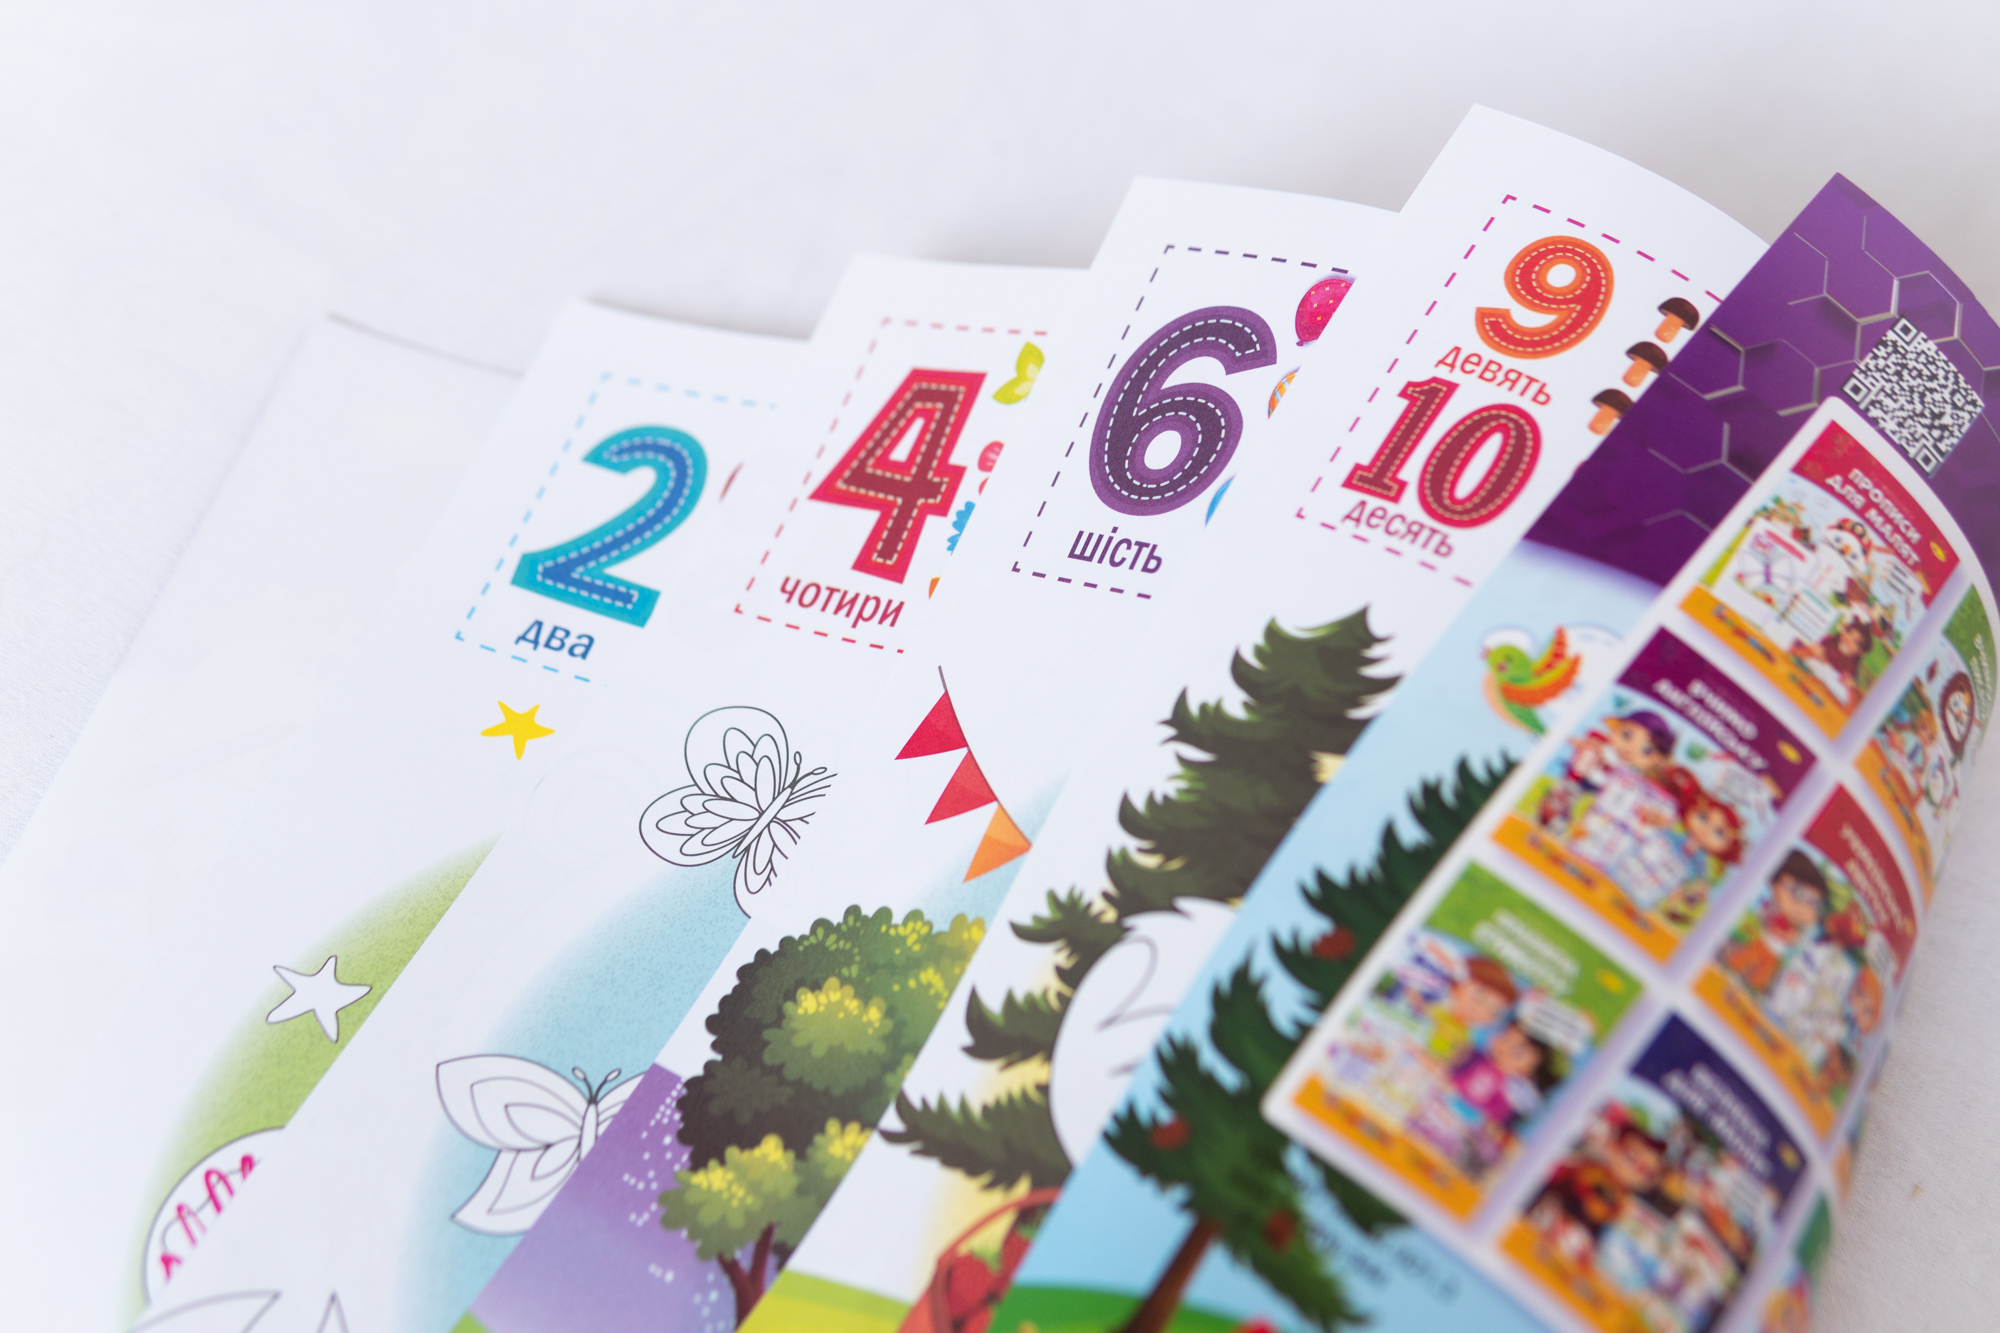 Malbuch für Kinder Farben Kreativität ukrainische Sprache Ausmalbild Zählreim Vorbereitung auf die Schule